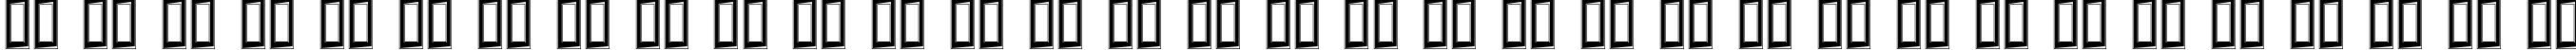 Пример написания русского алфавита шрифтом Challenge Contour